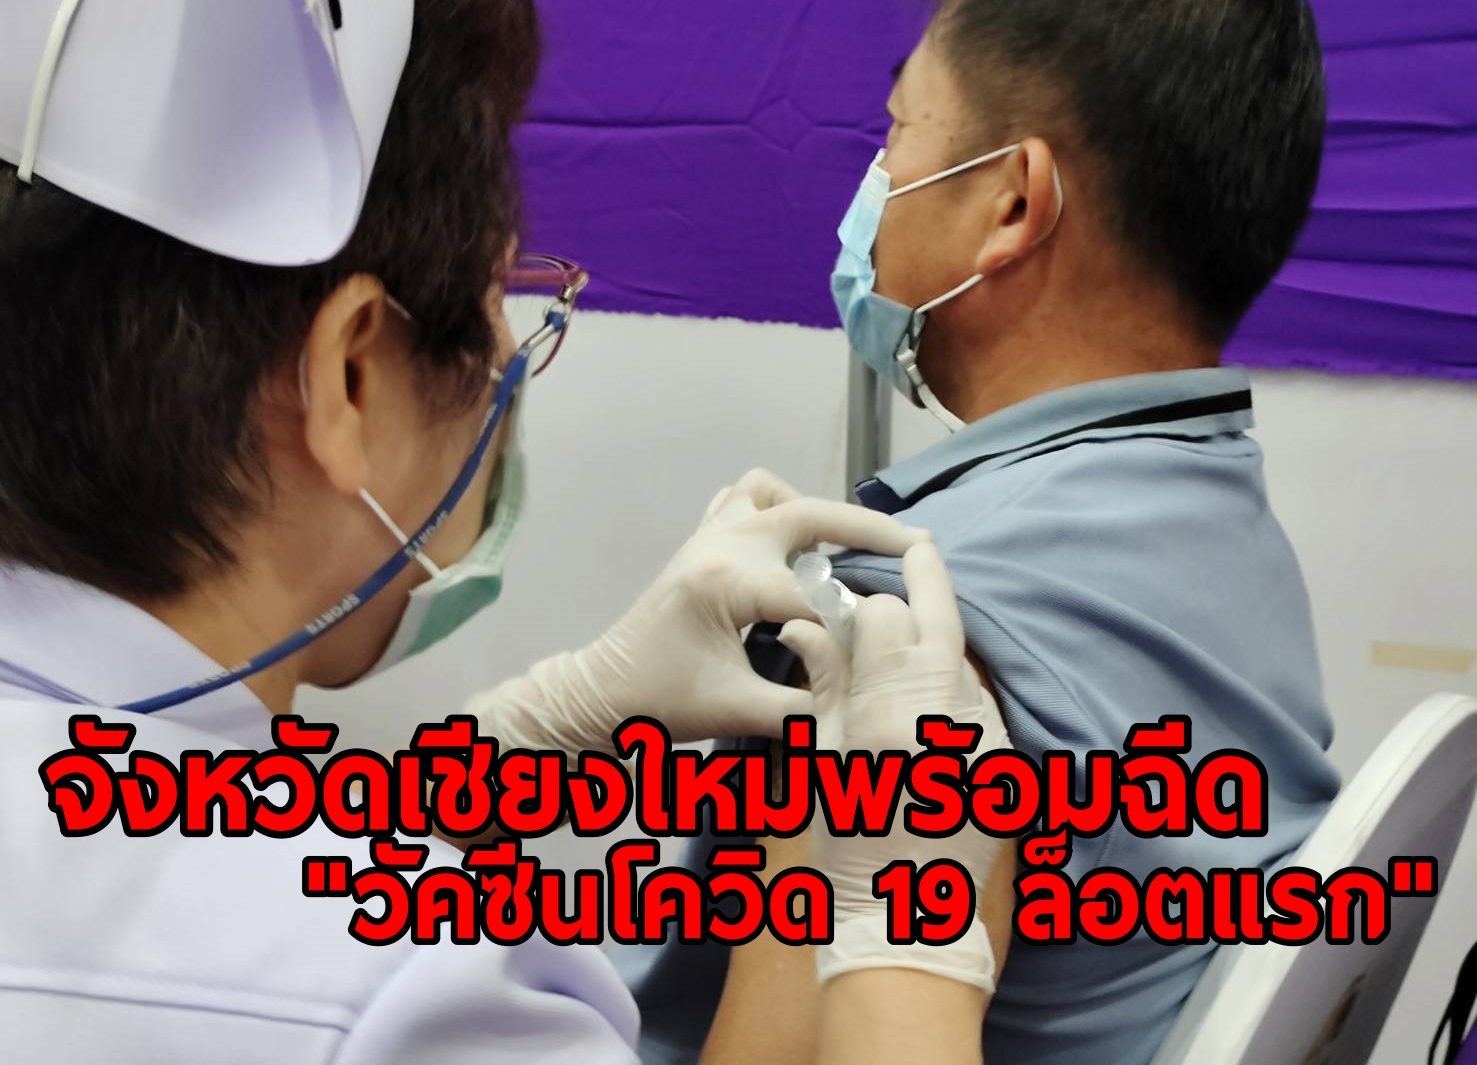         จังหวัดเชียงใหม่พร้อมฉีดวัคซีนโควิด 19 ล็อตแรก หลังถูกคัดเลือกให้อยู่ในกลุ่มเป้าหมายและพื้นที่เป้าหมาย 13 จังหวัดแรกของประเทศไทย เบื้องต้นให้โรงพยาบาลนัดกลุ่มเสี่ยงมาฉีดวัคซีน จากนั้นใช้ระบบ 